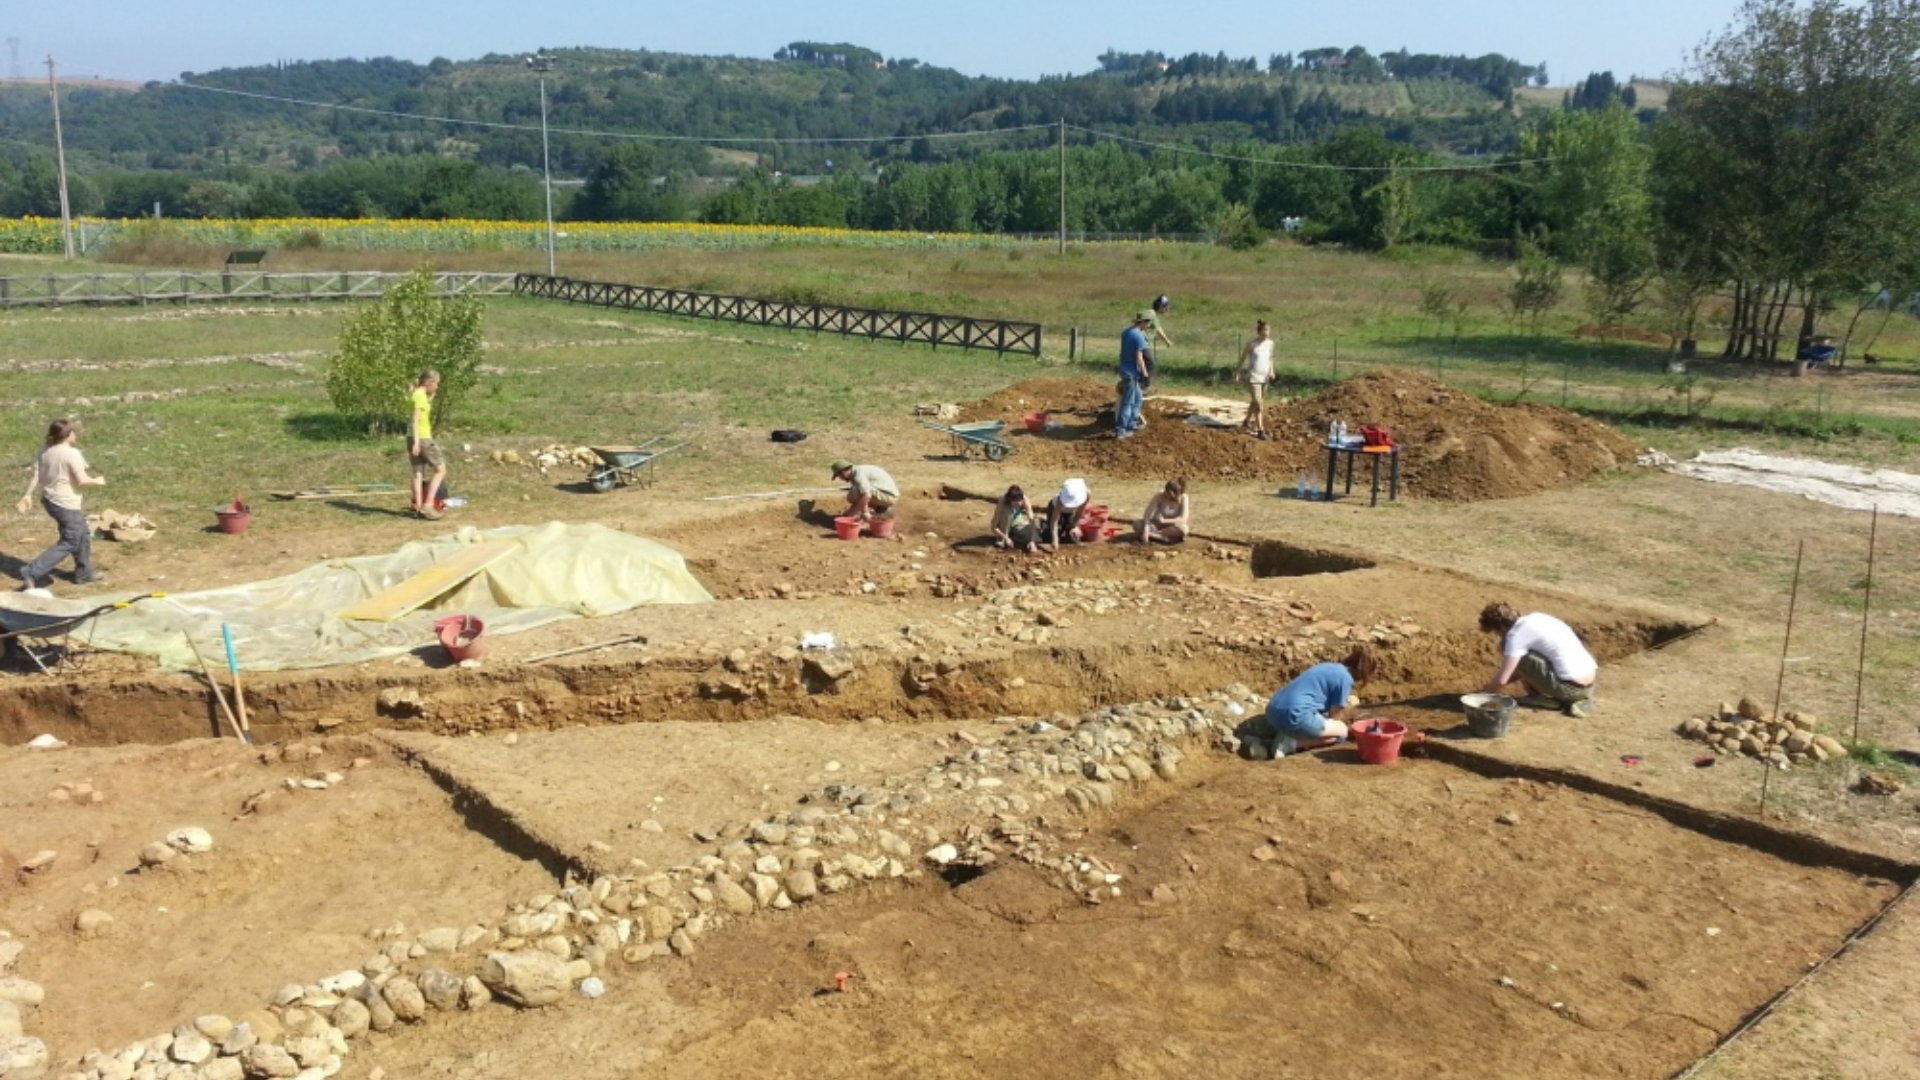 Archäologische Ausgrabungen der römischen Villa in Montelupo Fiorentino